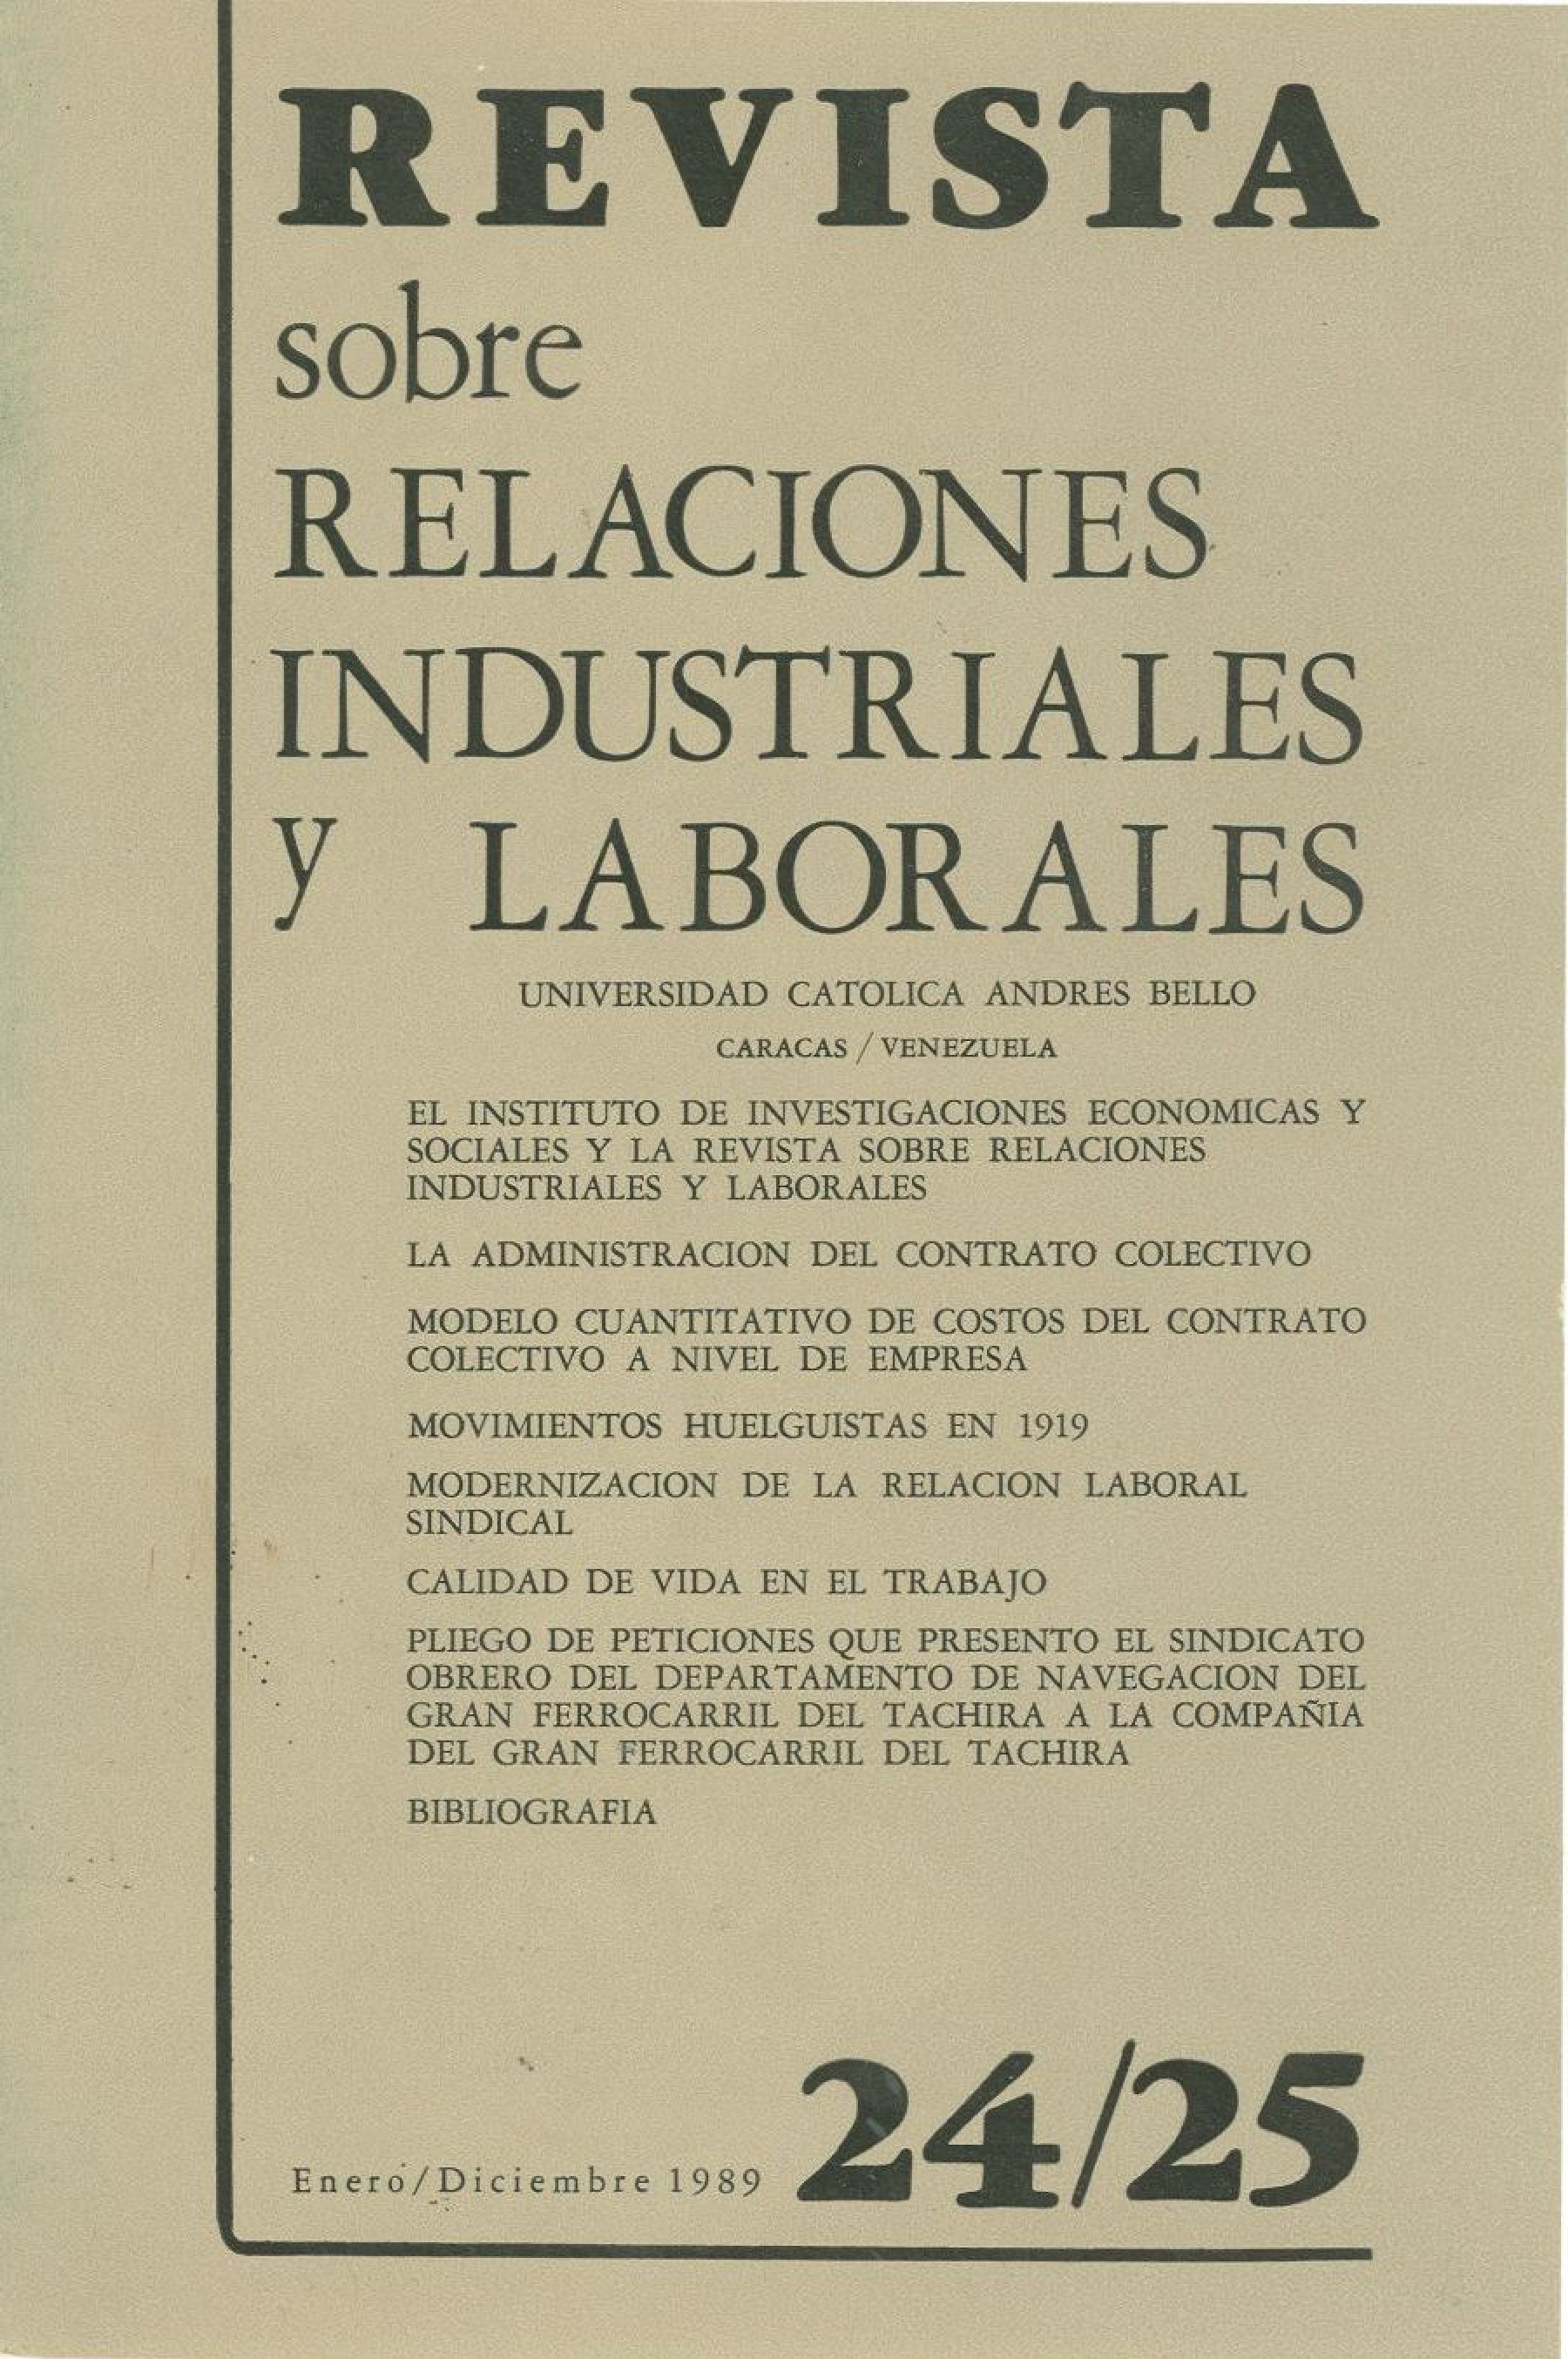 					Ver Núm. 24/25 (1989): Revista sobre Relaciones Industriales y Laborales
				